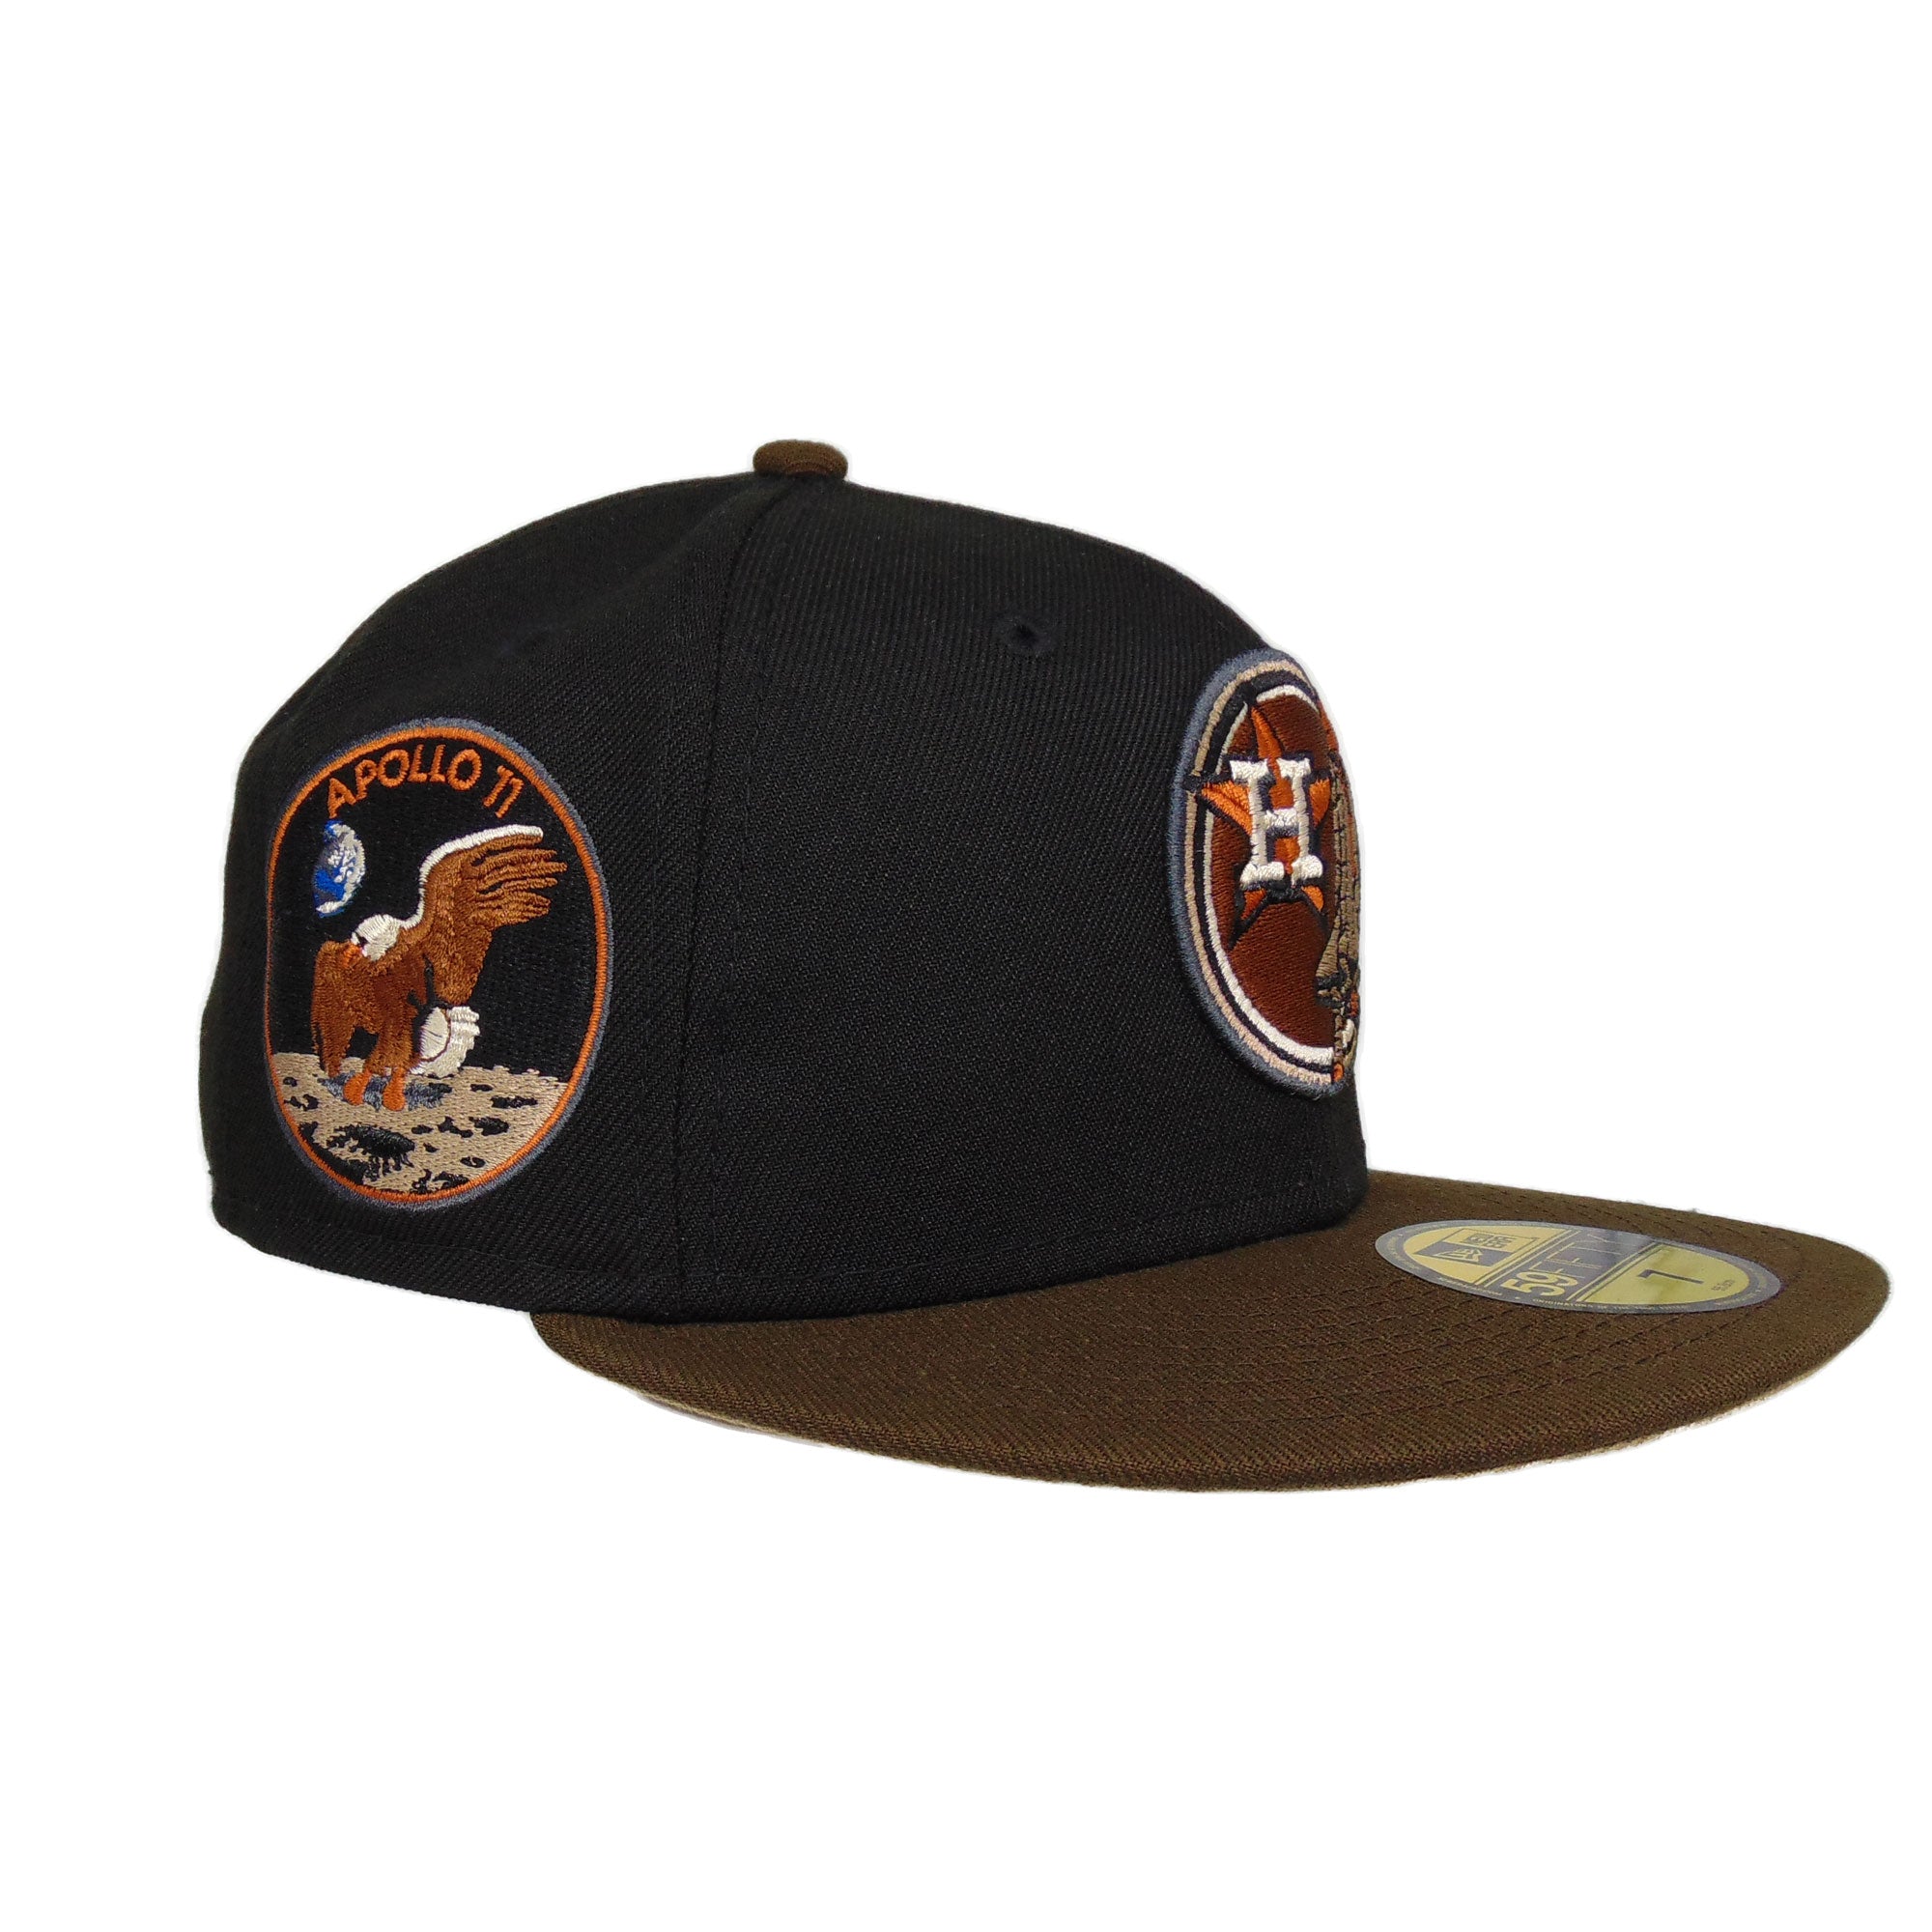 Houston Astros Custom New Era 59FIFTY Cap black and brown Apollo